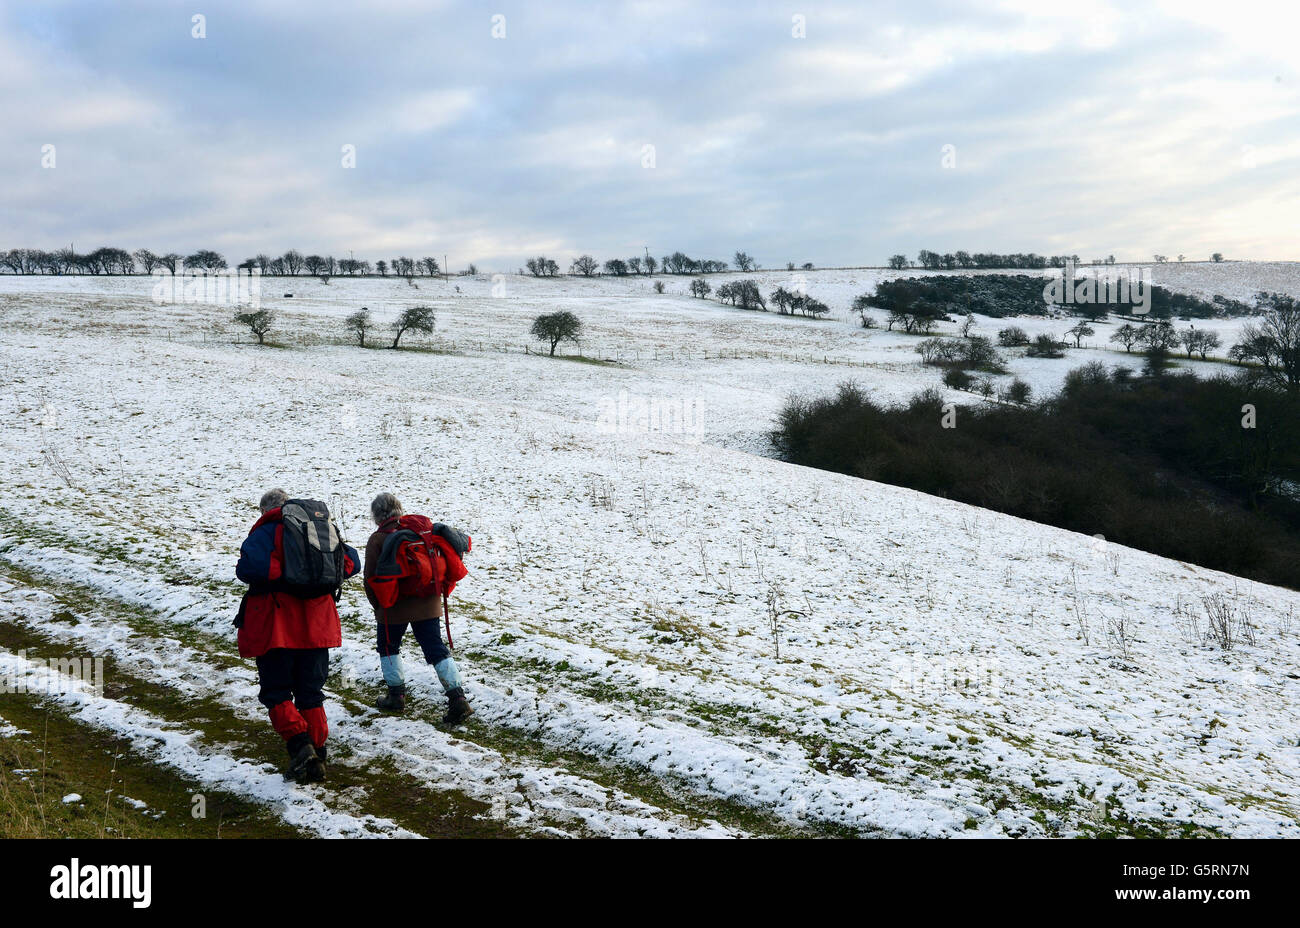 La neige sur les hauts sols des Yorkshire Wolds dans les pâturages de Millington, près de Pocklington, donne aux randonneurs un aperçu du temps et de la neige qui devraient avoir des répercussions sur de nombreuses régions du Royaume-Uni dans les jours à venir. Banque D'Images